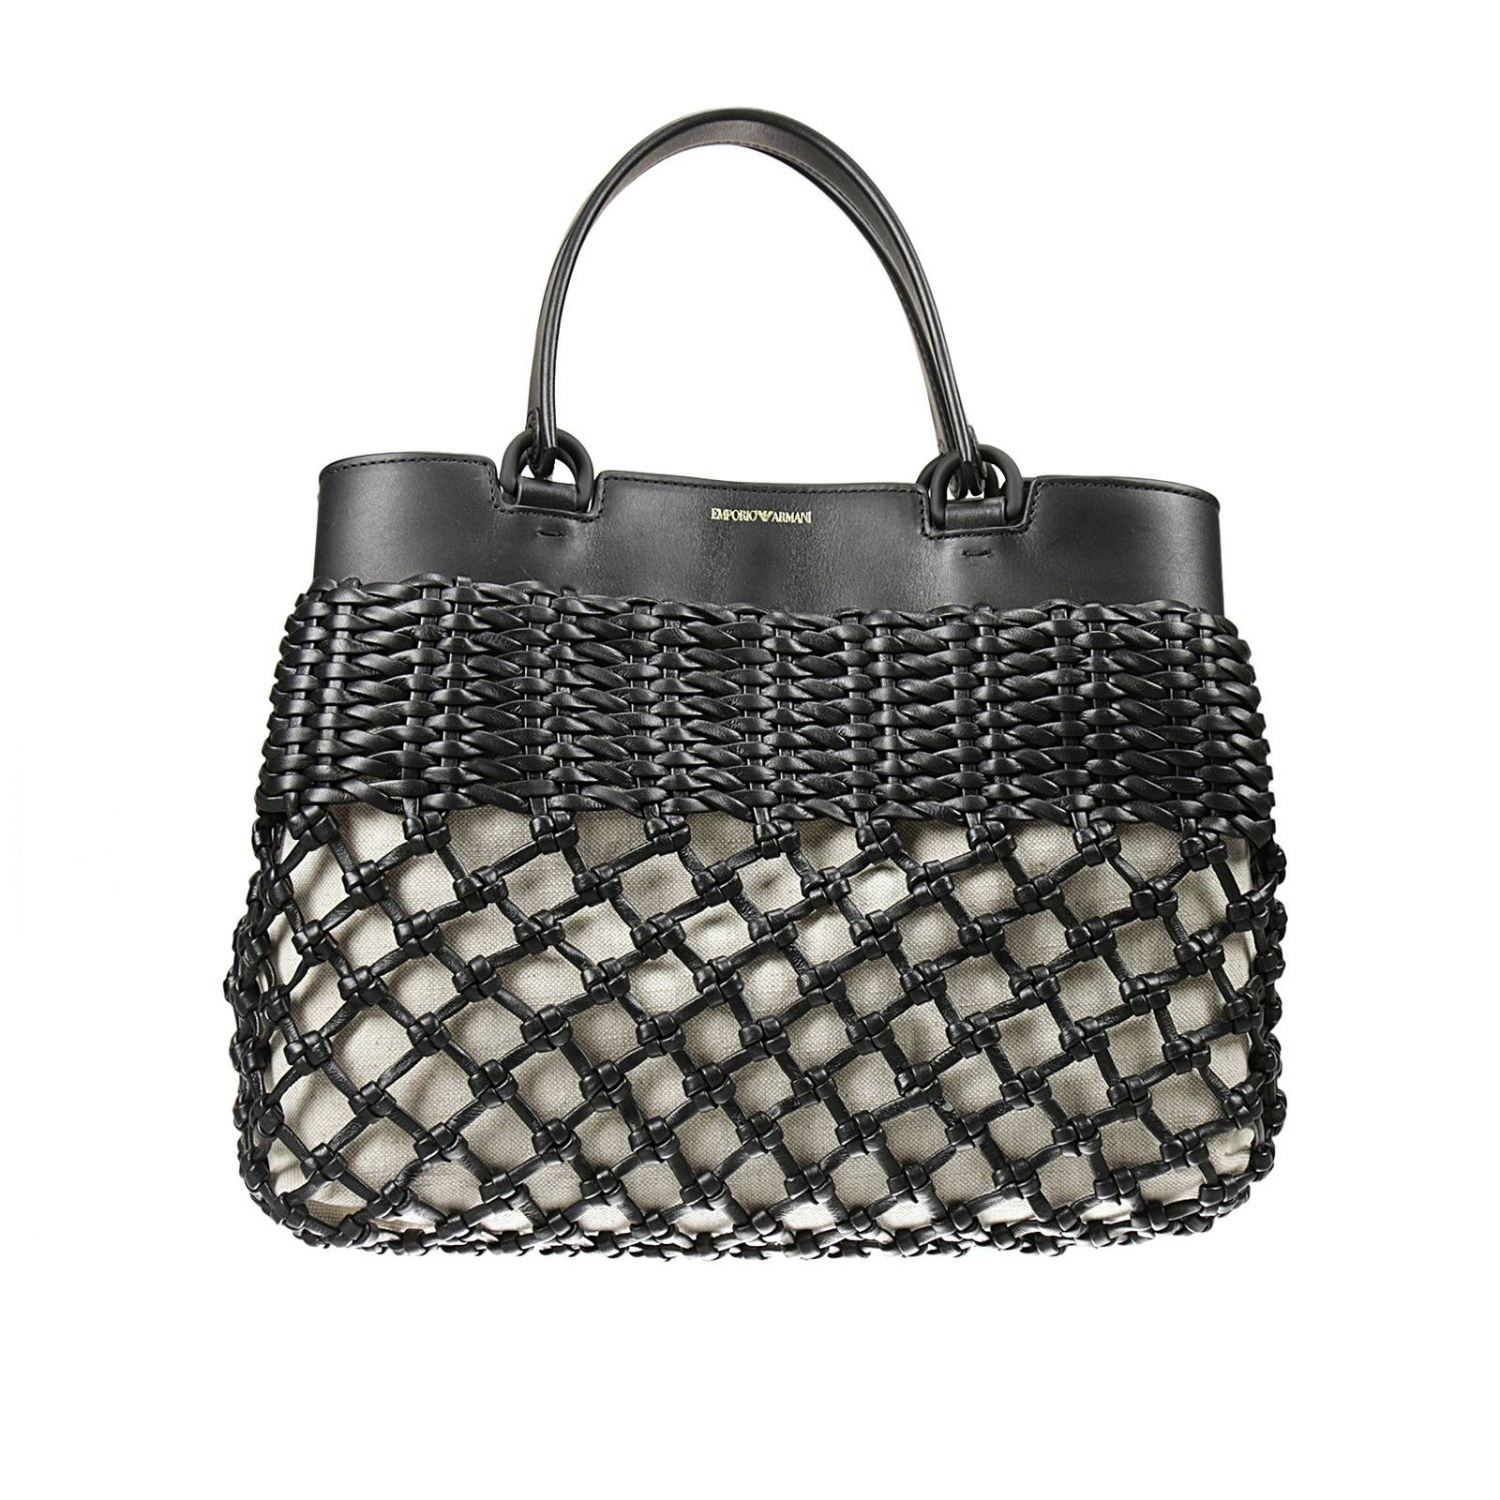 Lyst - Emporio Armani Giorgio Armani Women's Handbag in Black